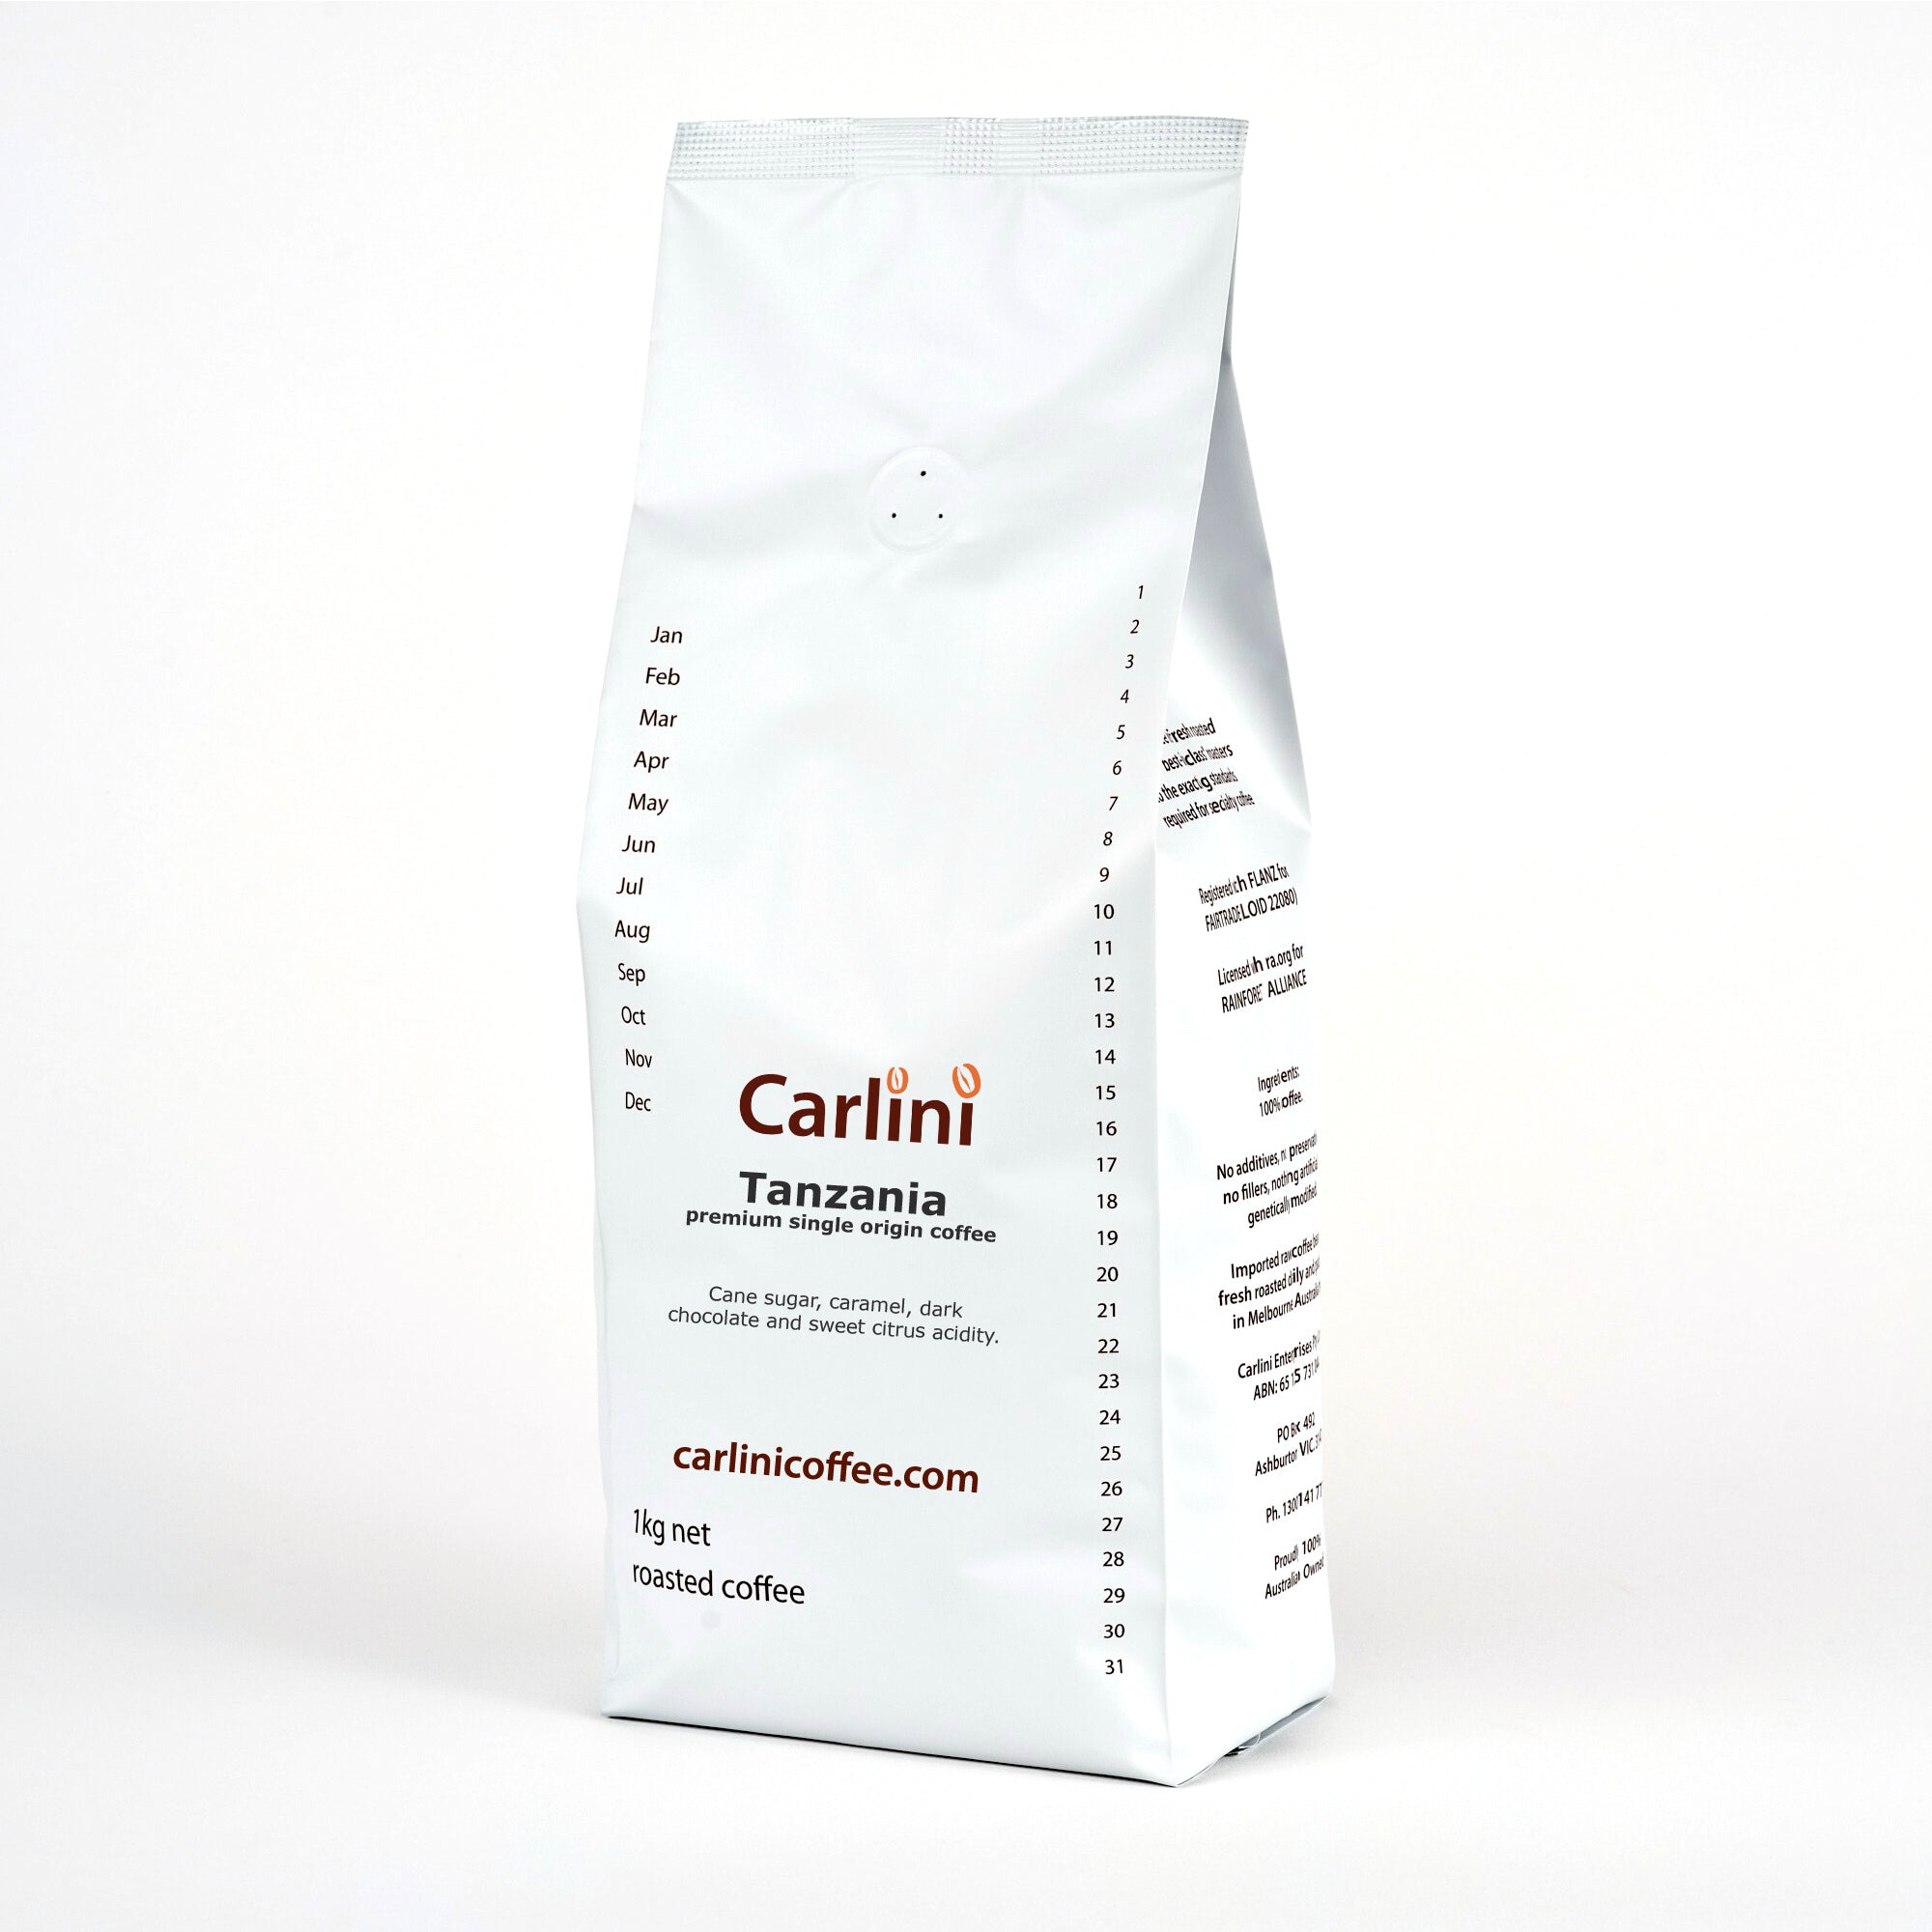 Carlini Coffee 1kg pack of single origin Tanzania coffee